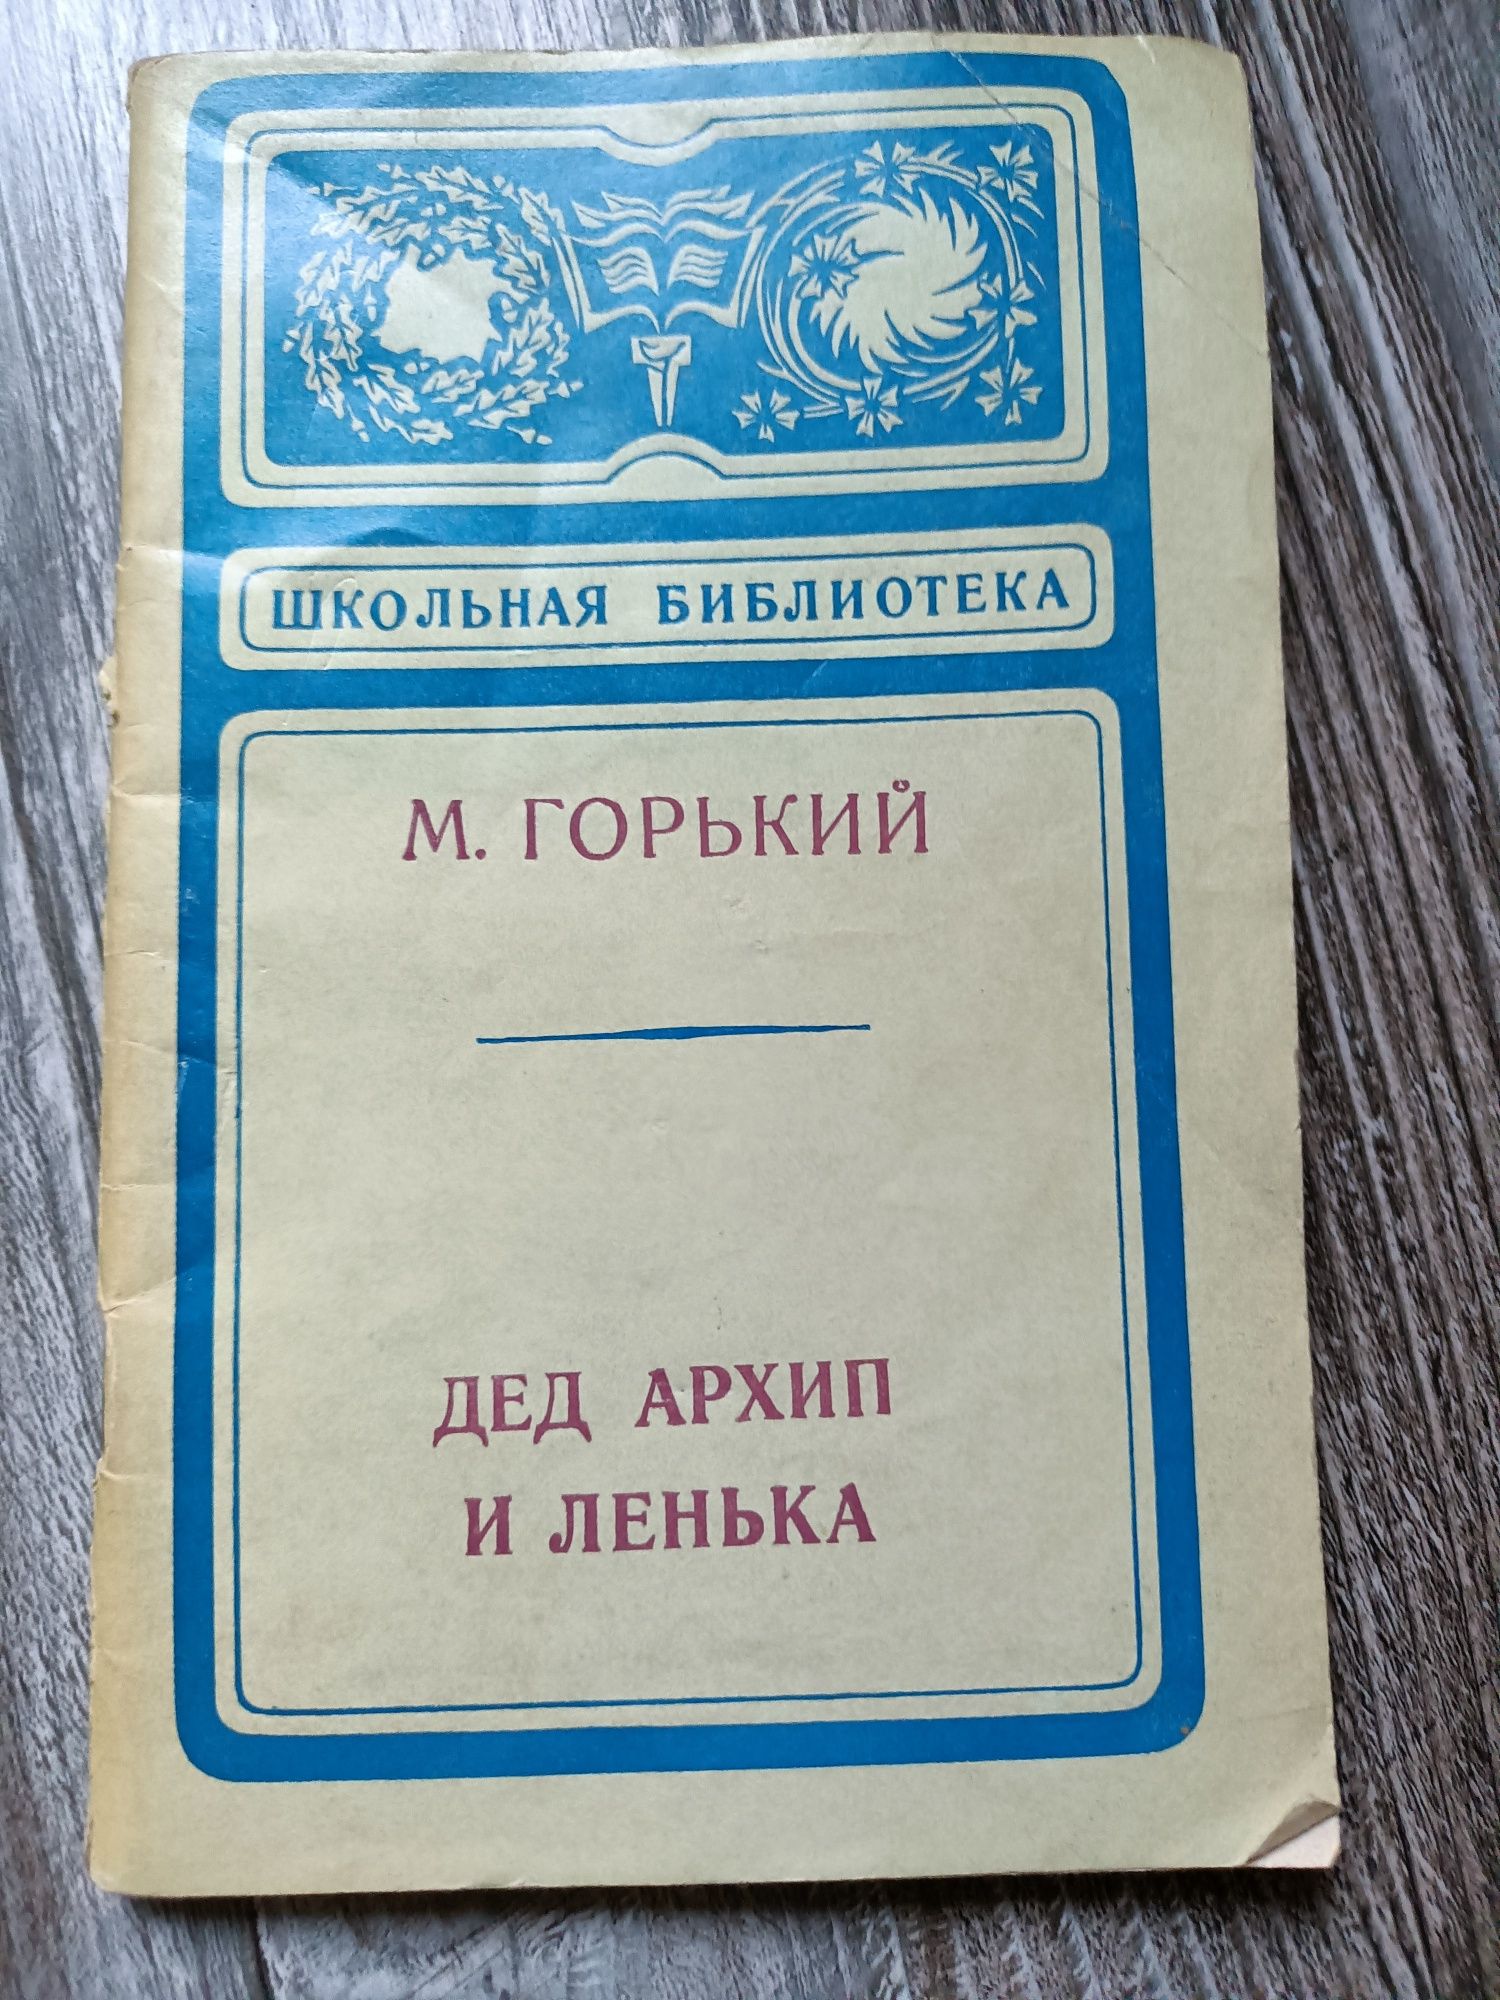 Książka po rosyjsku z 1976 r